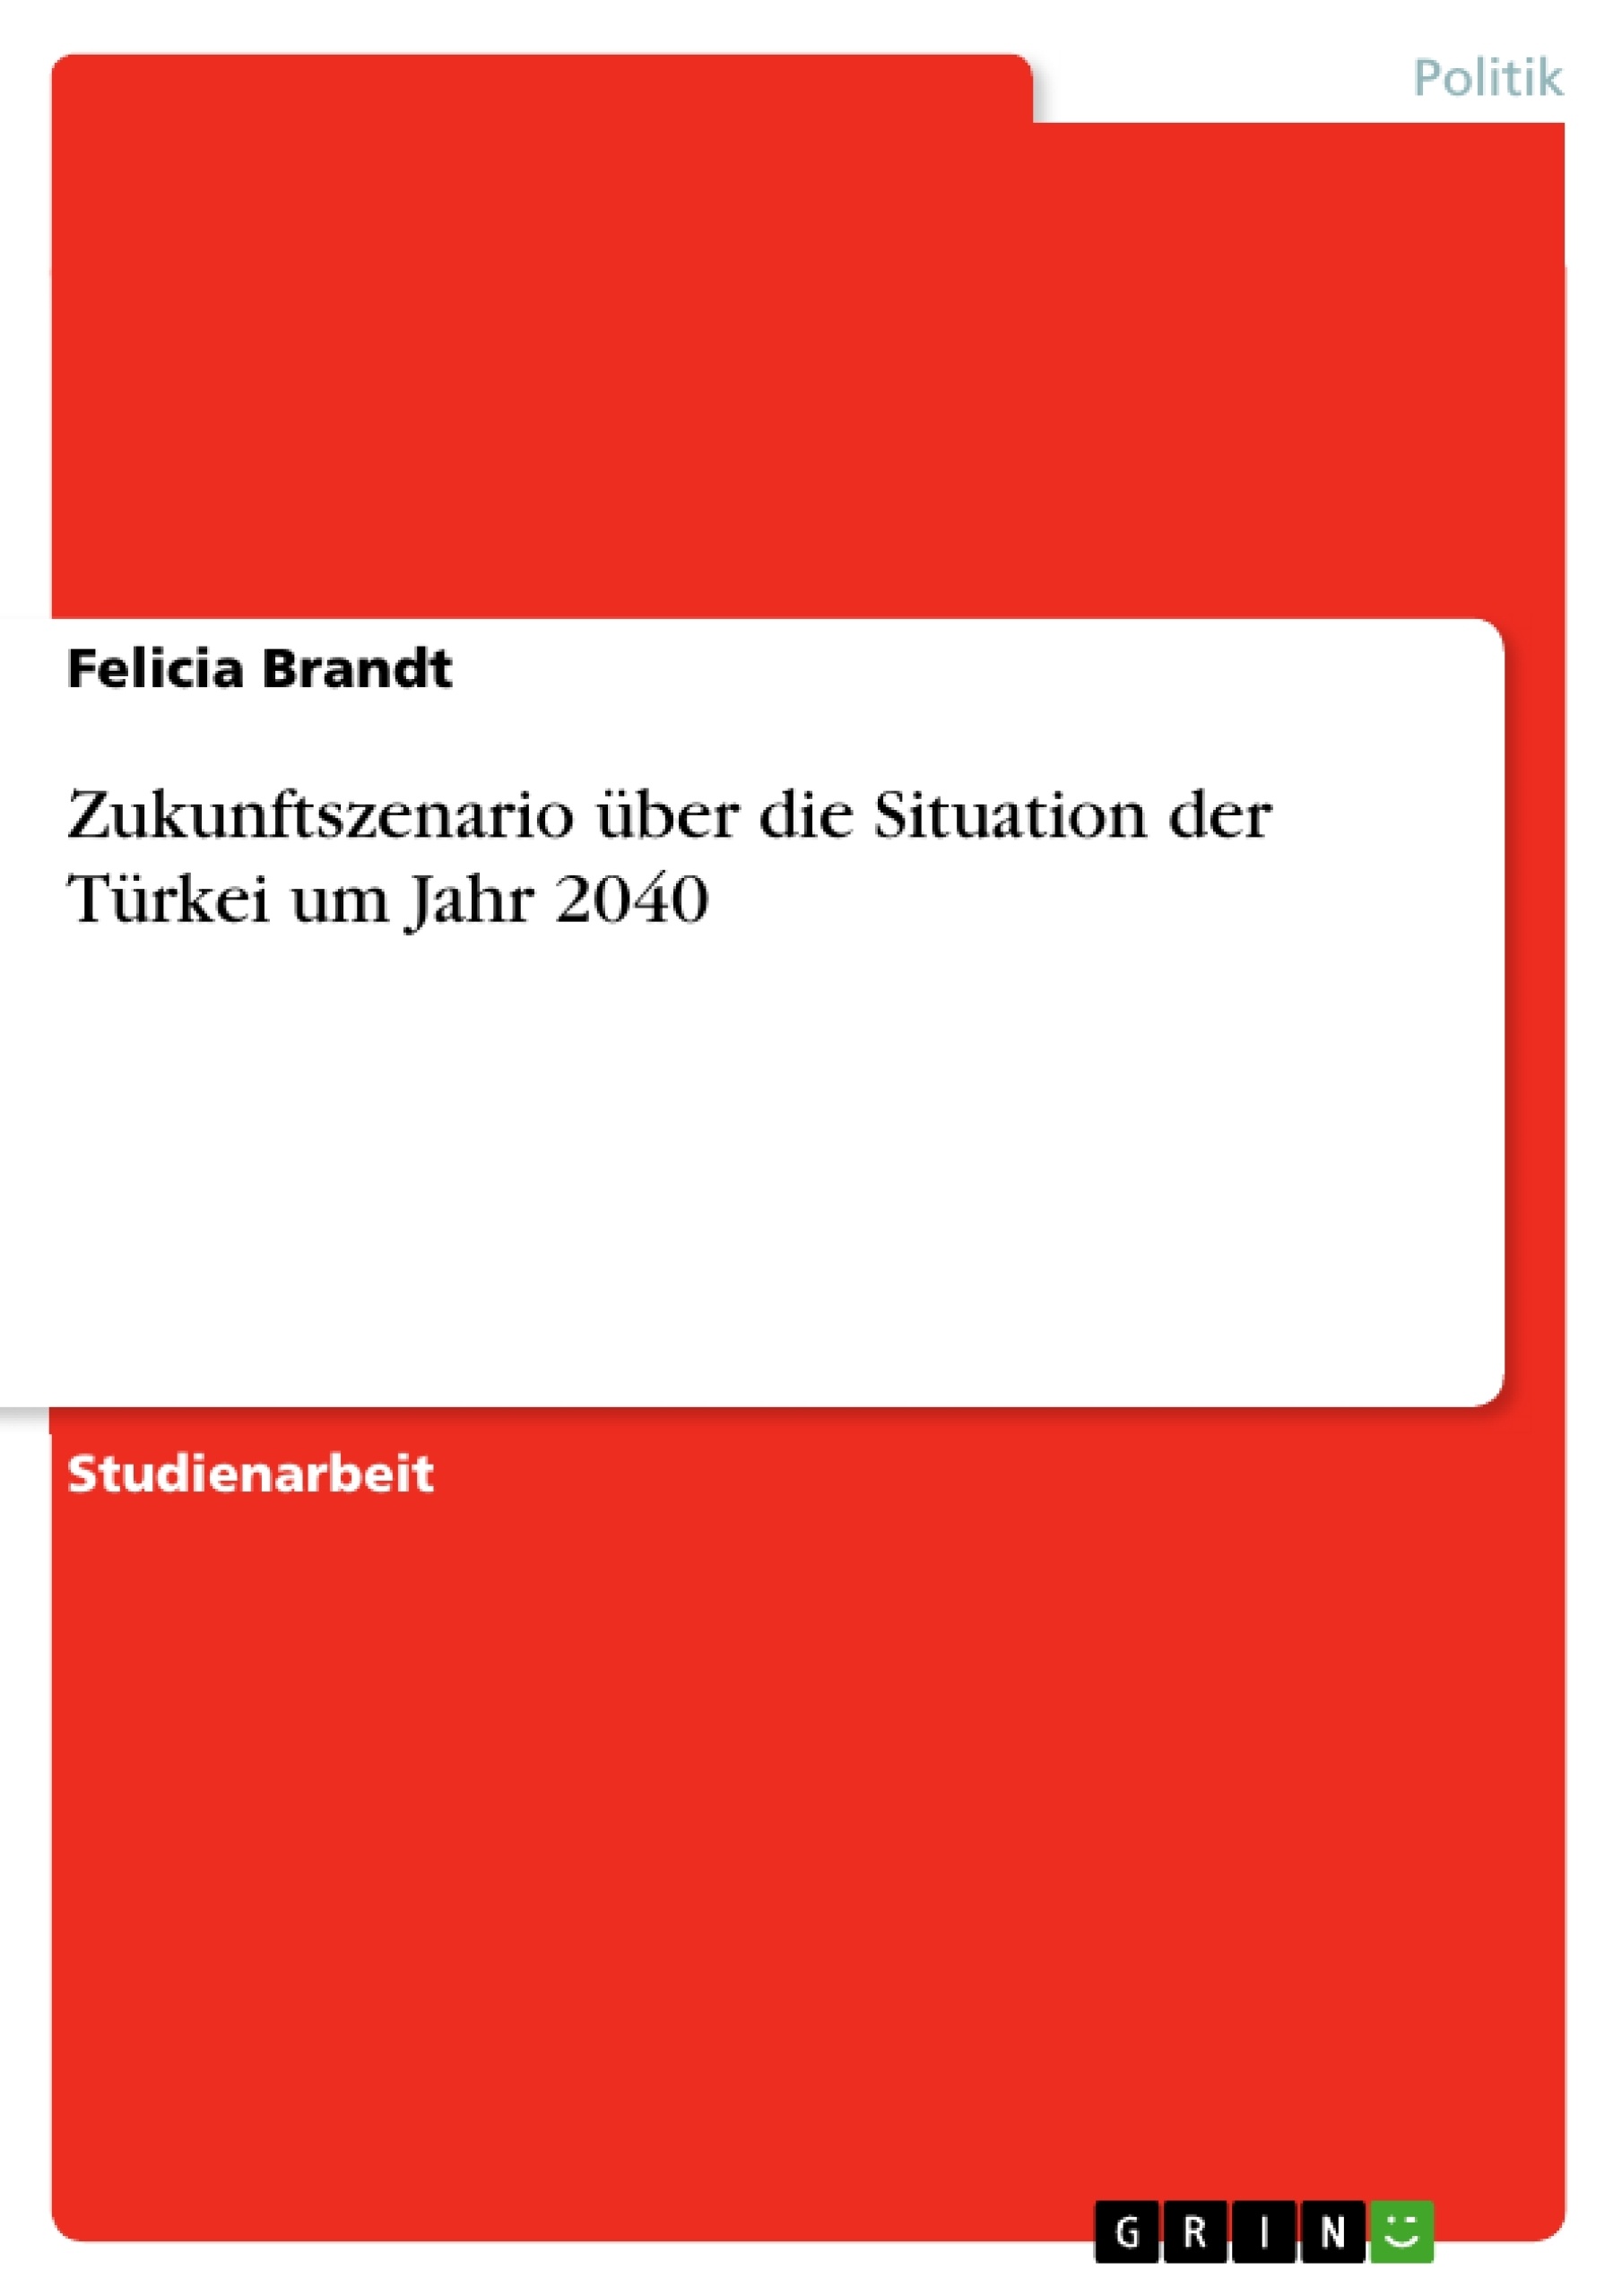 Titel: Zukunftszenario über die Situation der Türkei um Jahr 2040